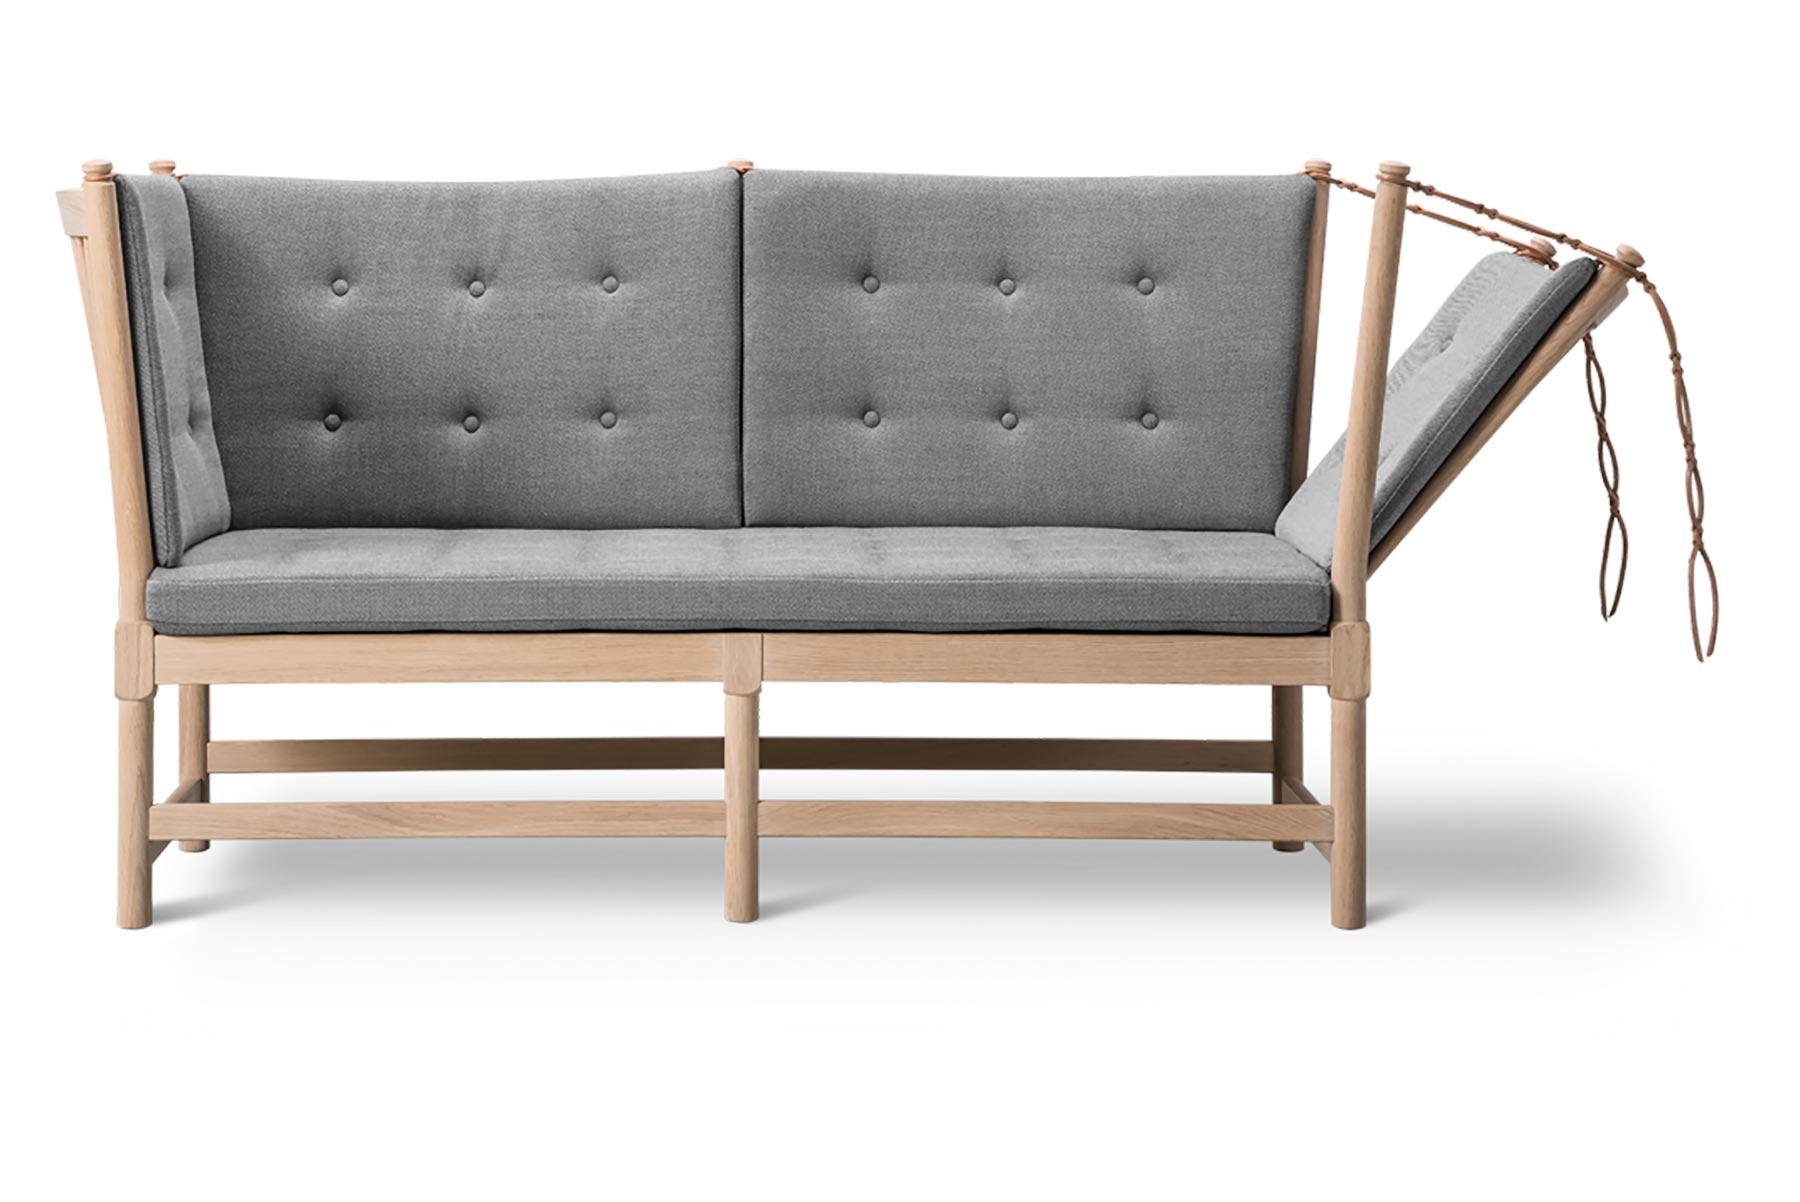 Mogensen entwarf das Speichenrückensofa 1945 als eine Mischung aus Liege und Chaiselongue, mit einer aufklappbaren Seite. Die freiliegende Konstruktion war zu anspruchsvoll für die bescheidene Nachkriegskultur, und das Sofa ging erst 1962 in